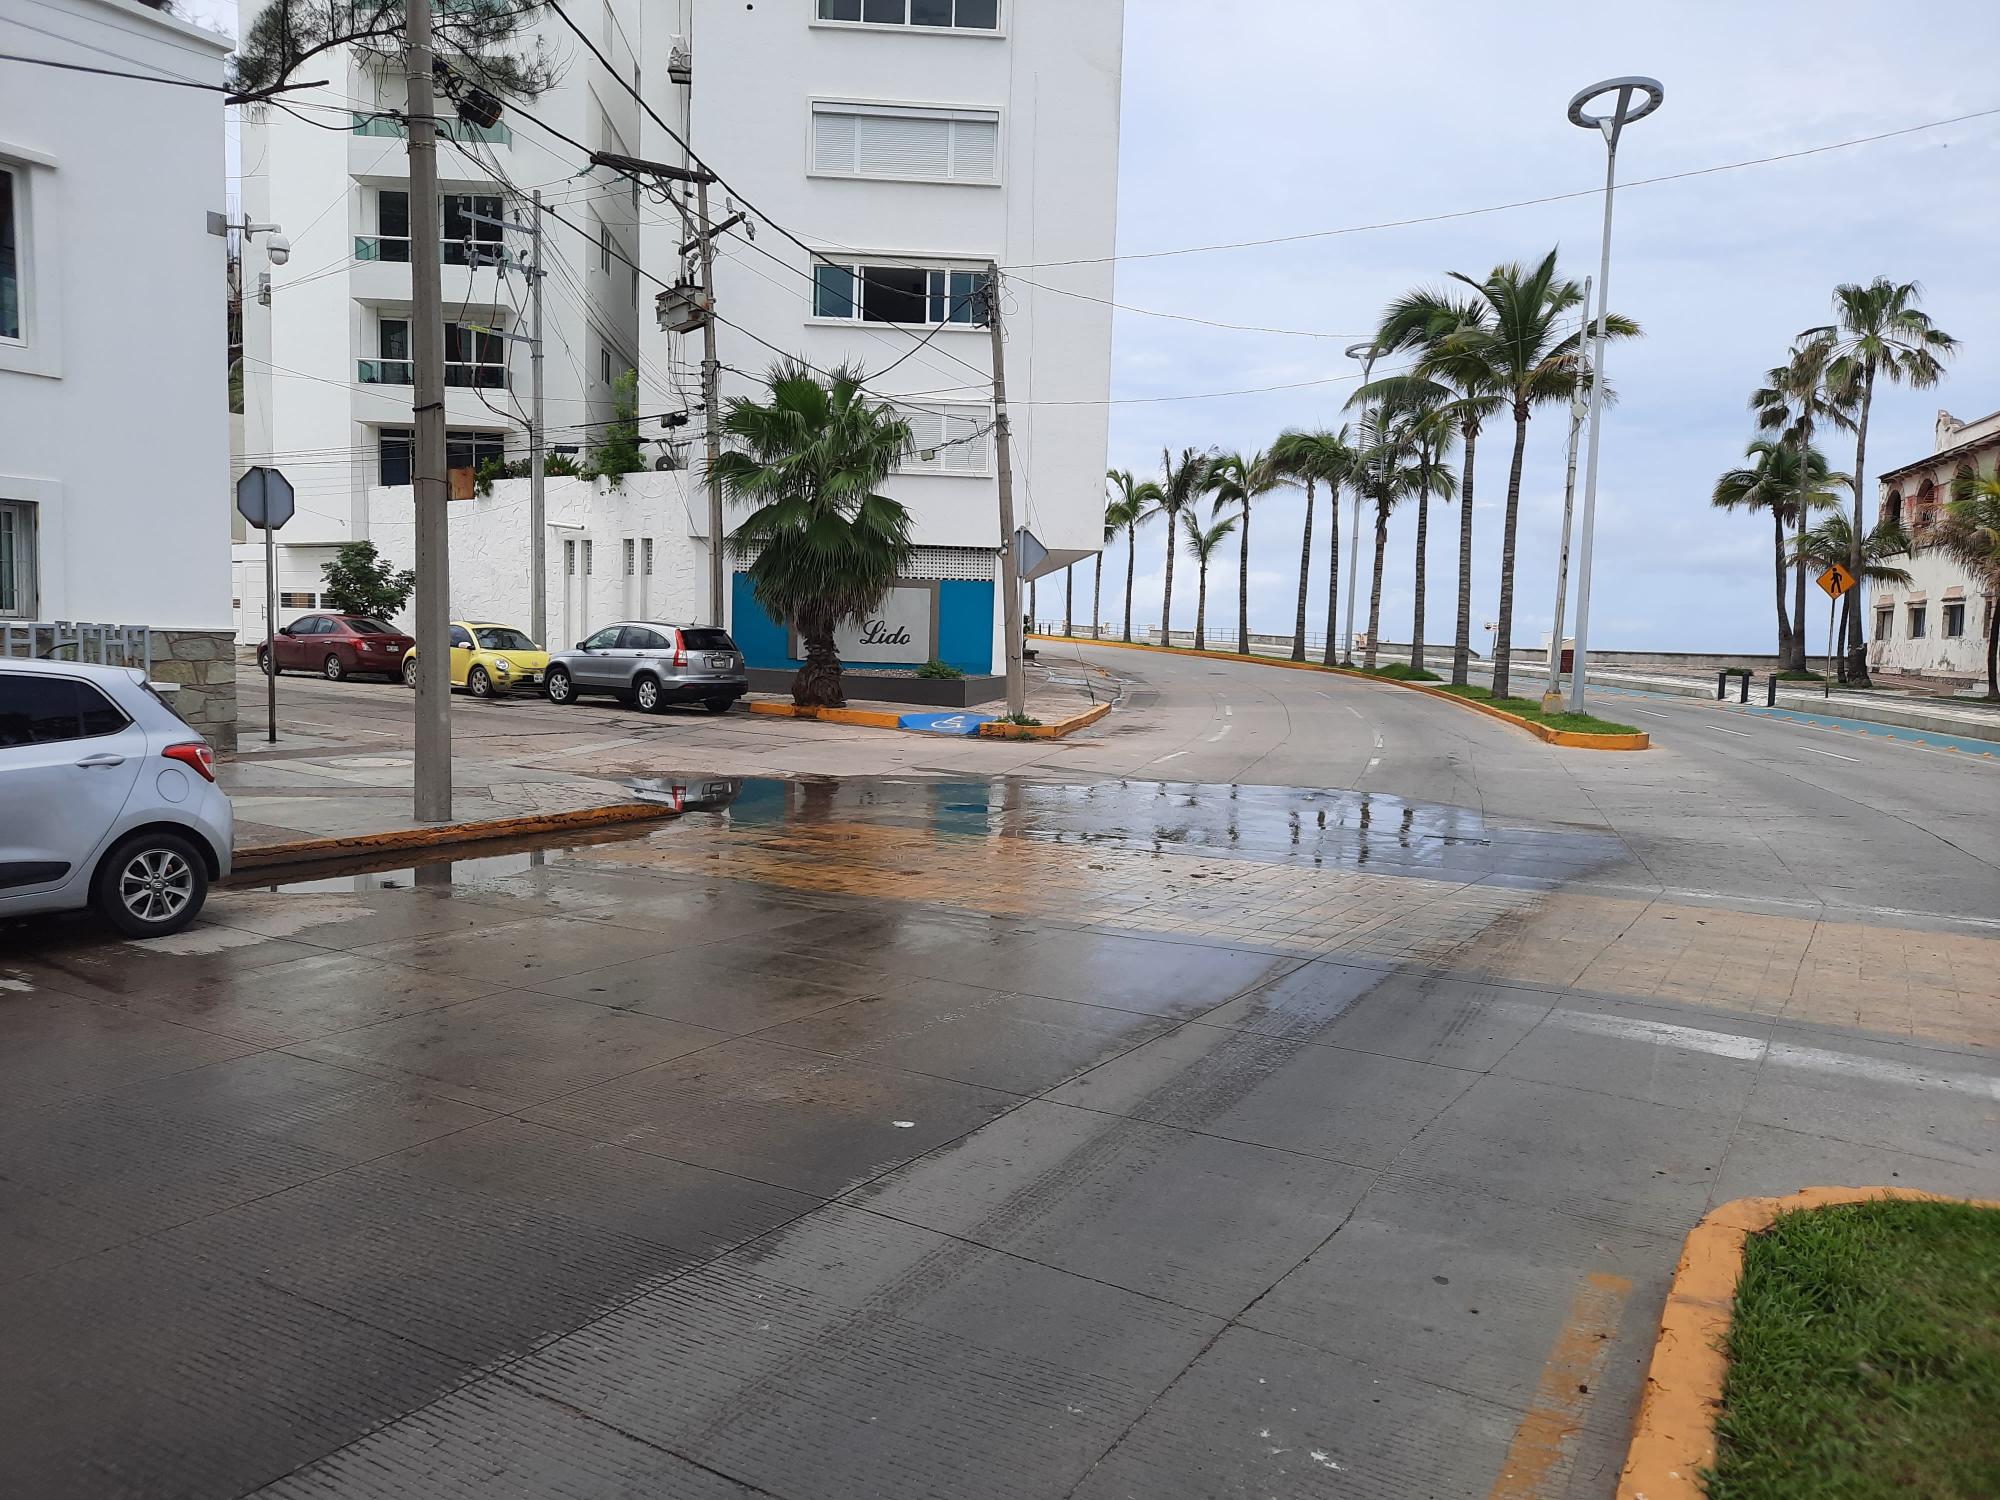 $!Persisten descargas de aguas negras en playa Los Pinitos, en Mazatlán